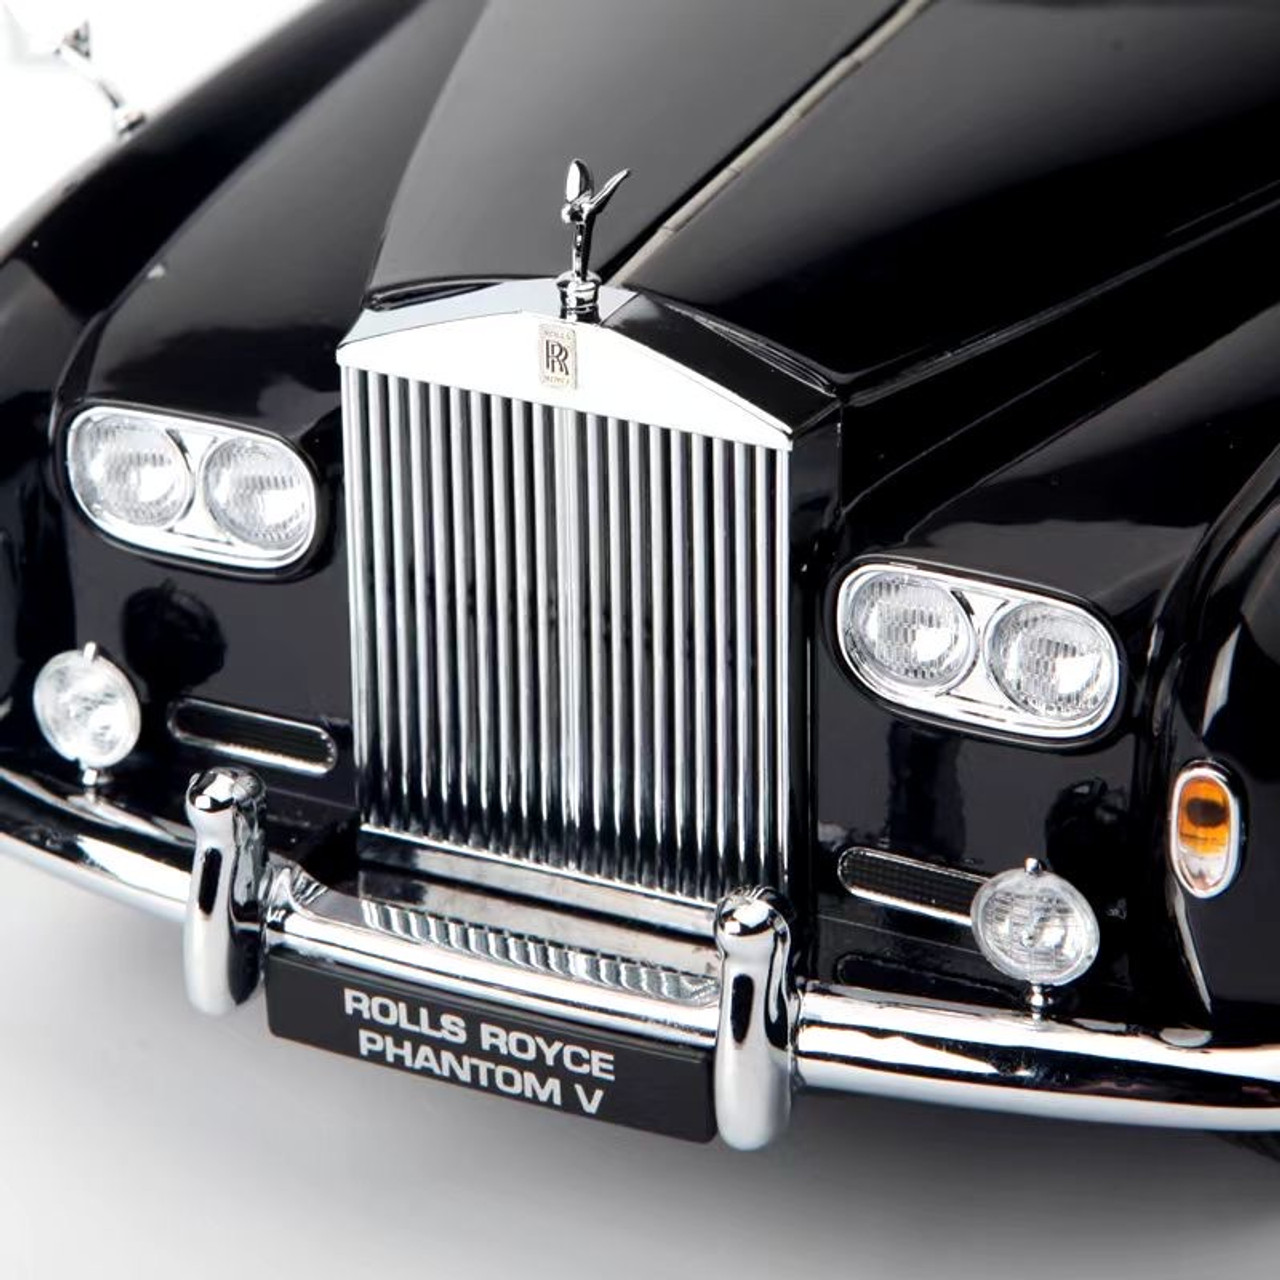 1/18 Paragon 1964 RR Rolls-Royce Phantom V (Midnight Blue) Diecast Car Model